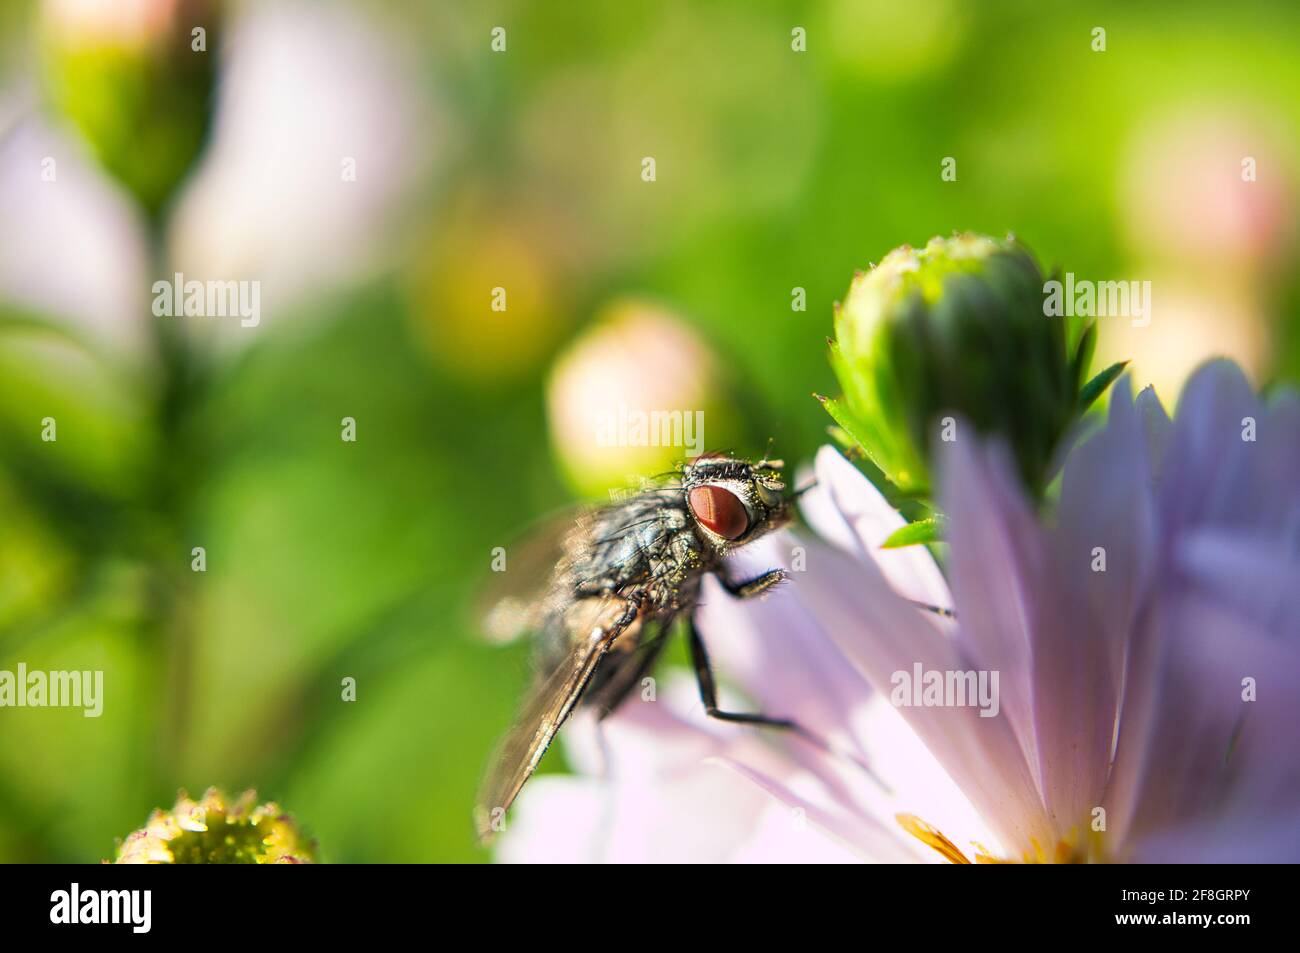 Blowfly on a flower taken as macro Stock Photo